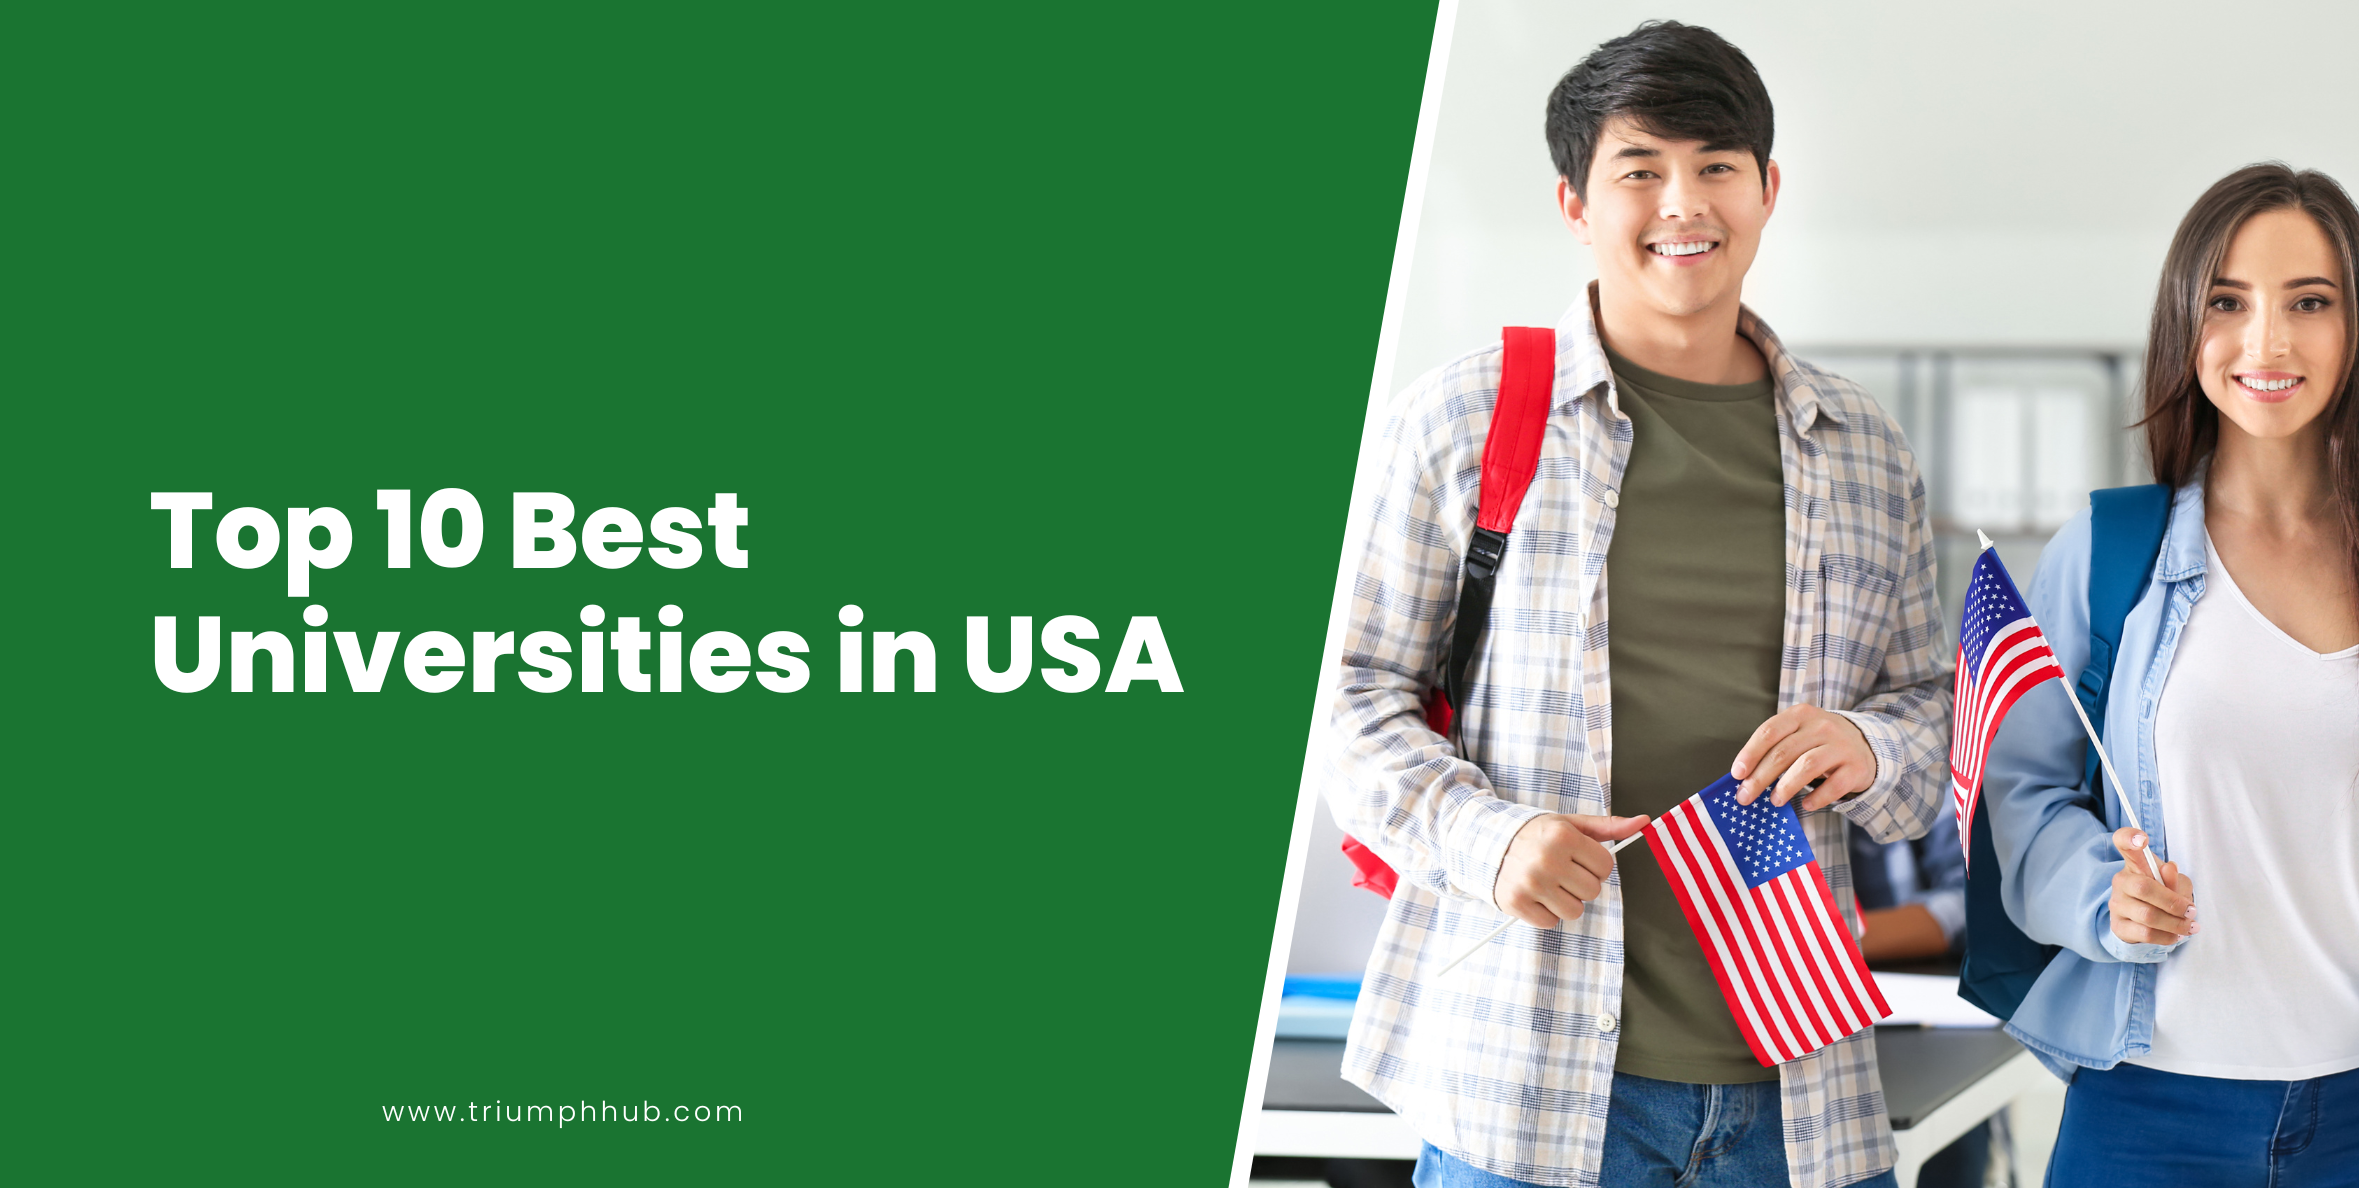 alt="Top 10 Best Universities in USA"